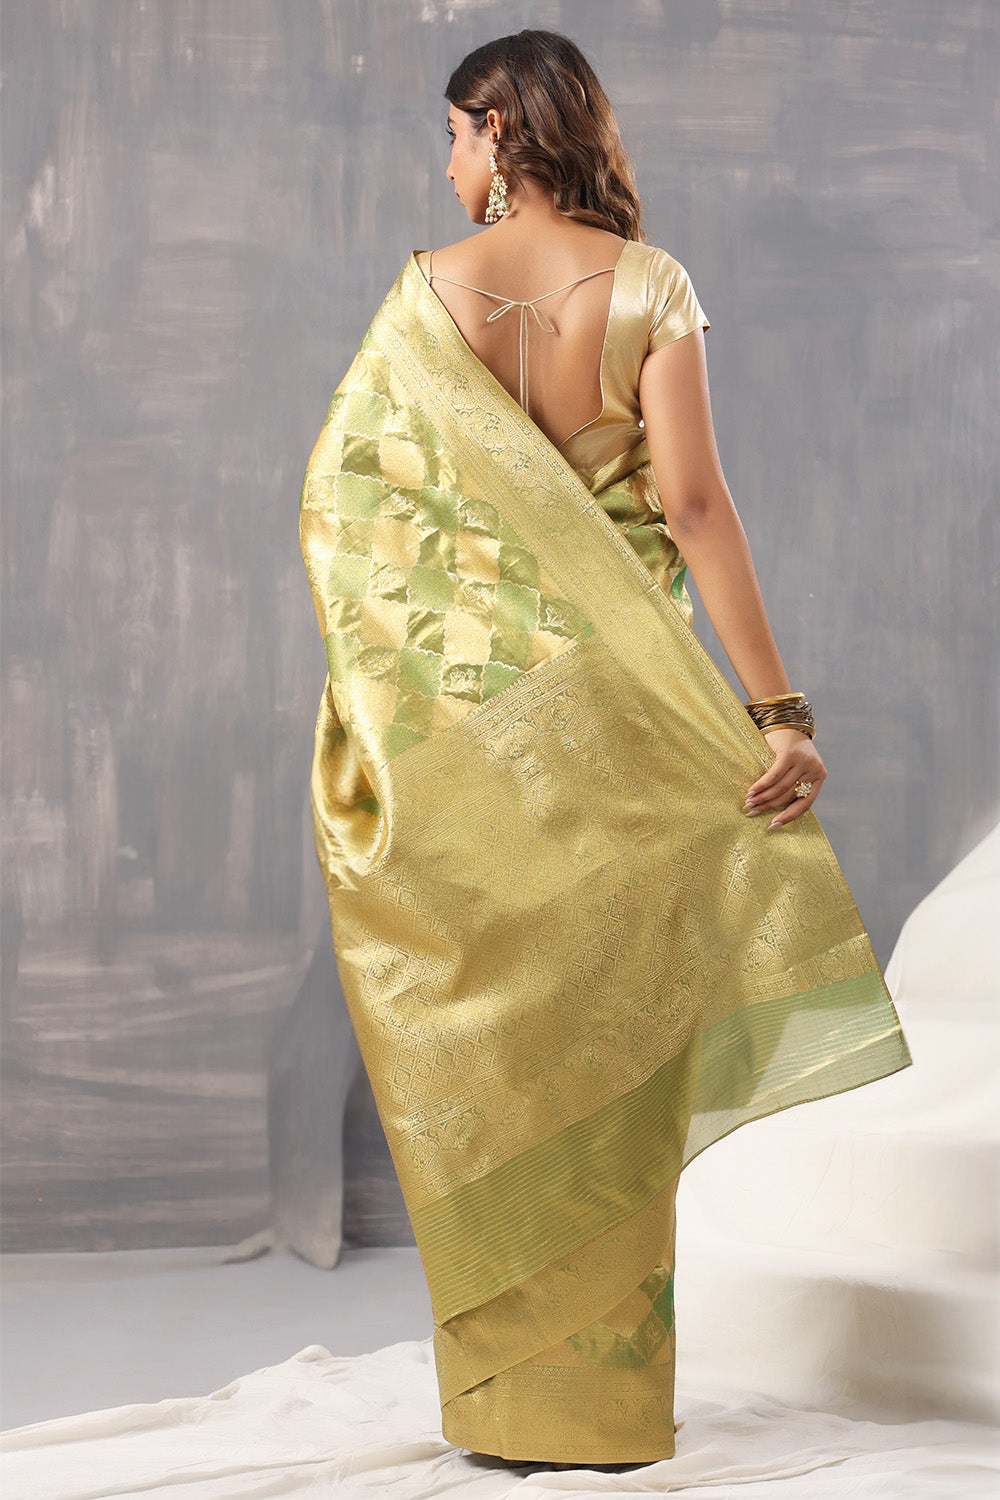 Golden & Green Color Silk Woven Saree